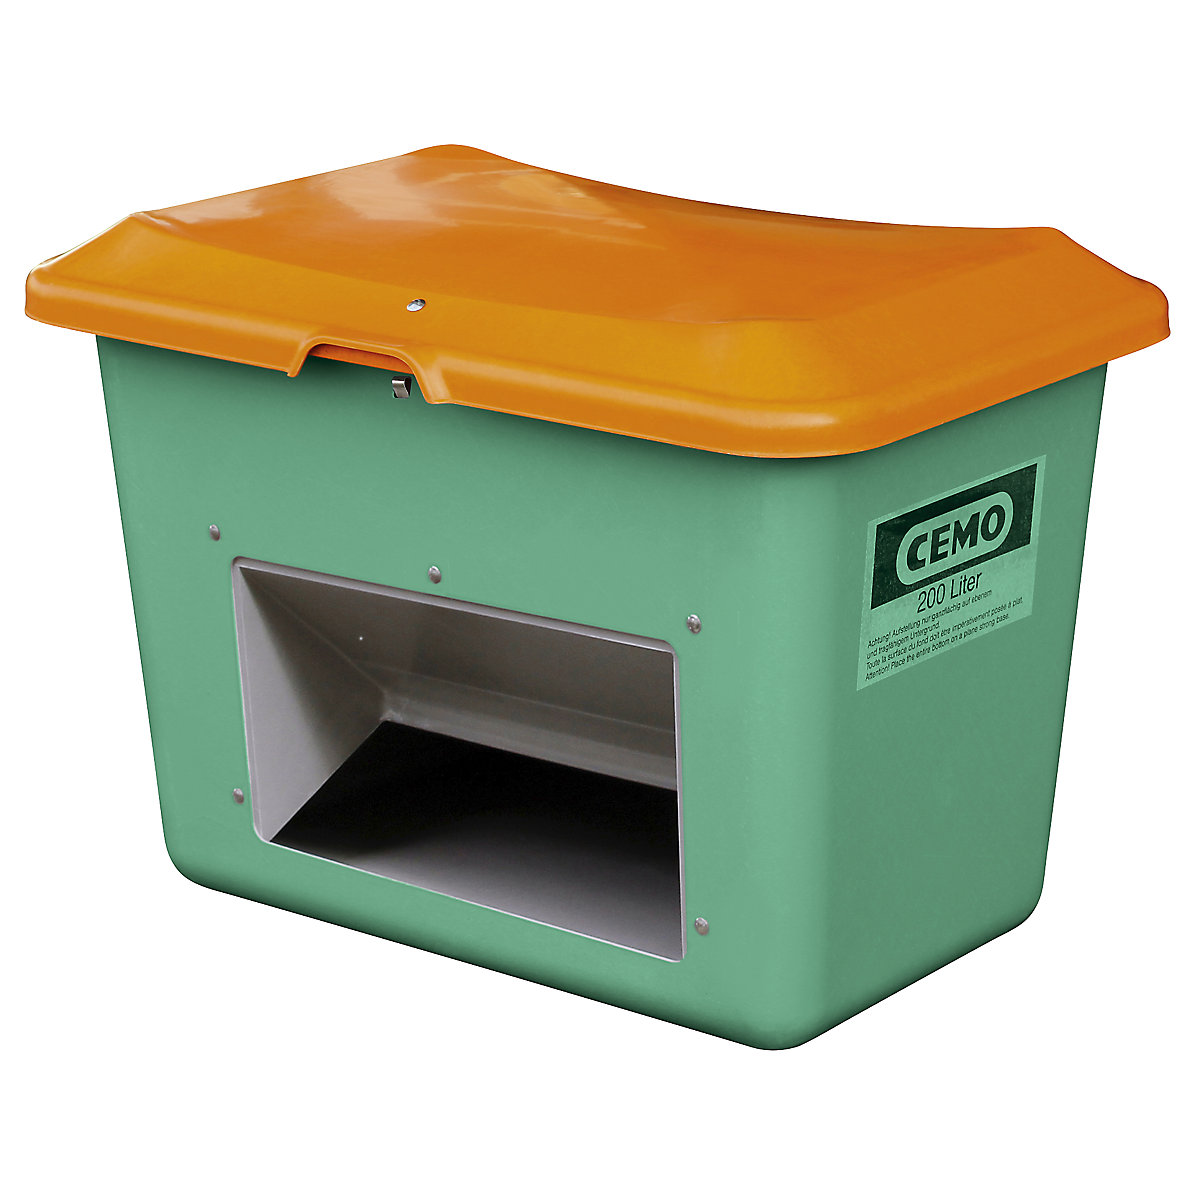 CEMO Streugutbehälter aus GfK, Volumen 200 l, mit Entnahmeöffnung, Behälter grün